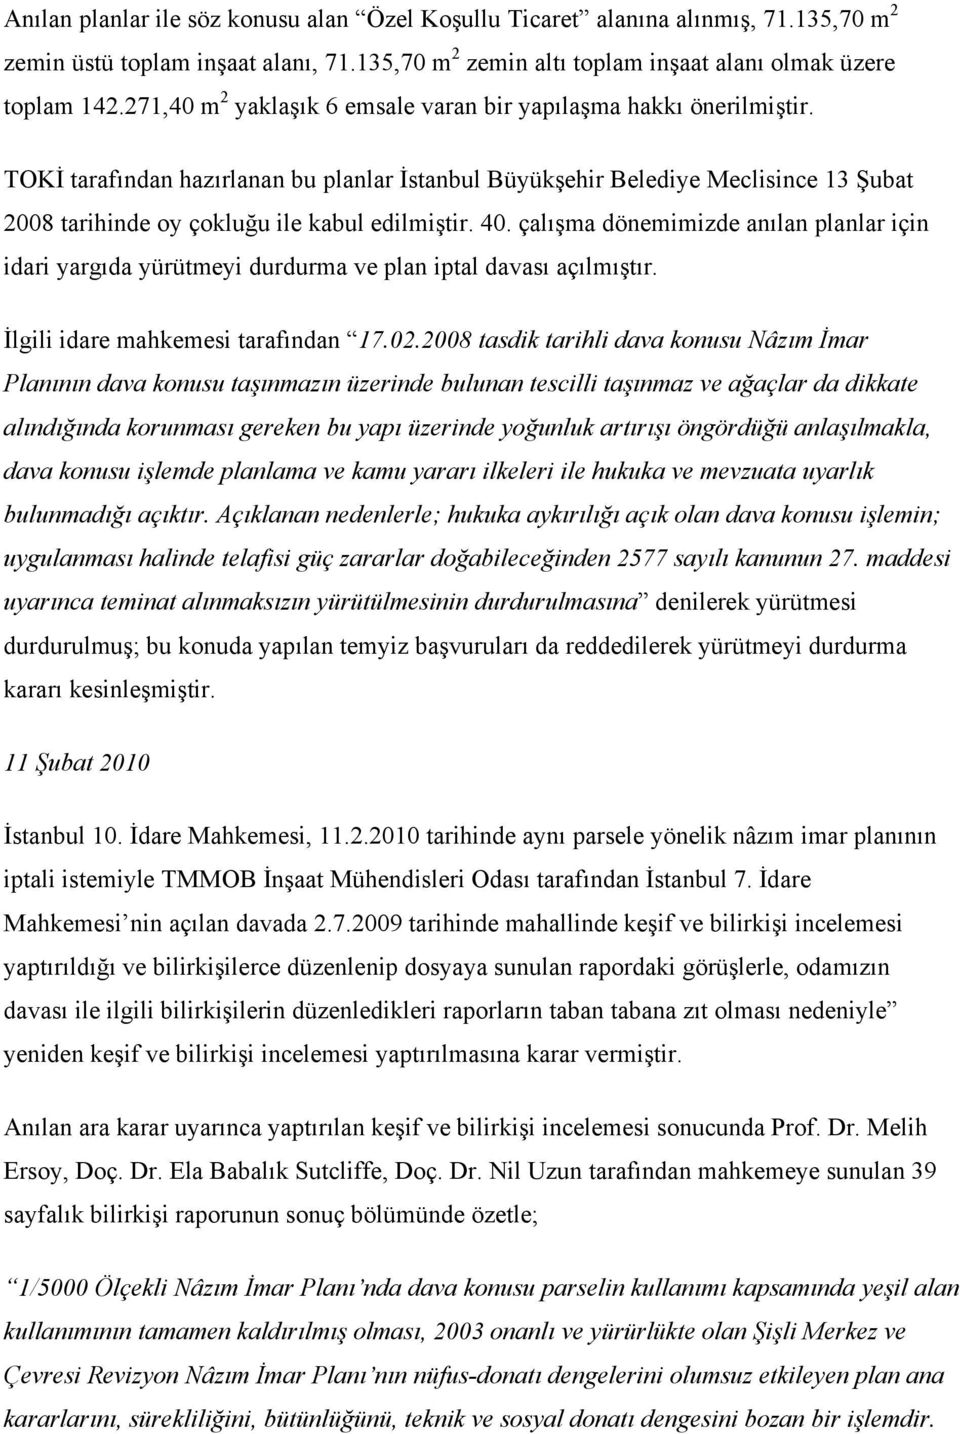 TOKİ tarafından hazırlanan bu planlar İstanbul Büyükşehir Belediye Meclisince 13 Şubat 2008 tarihinde oy çokluğu ile kabul edilmiştir. 40.